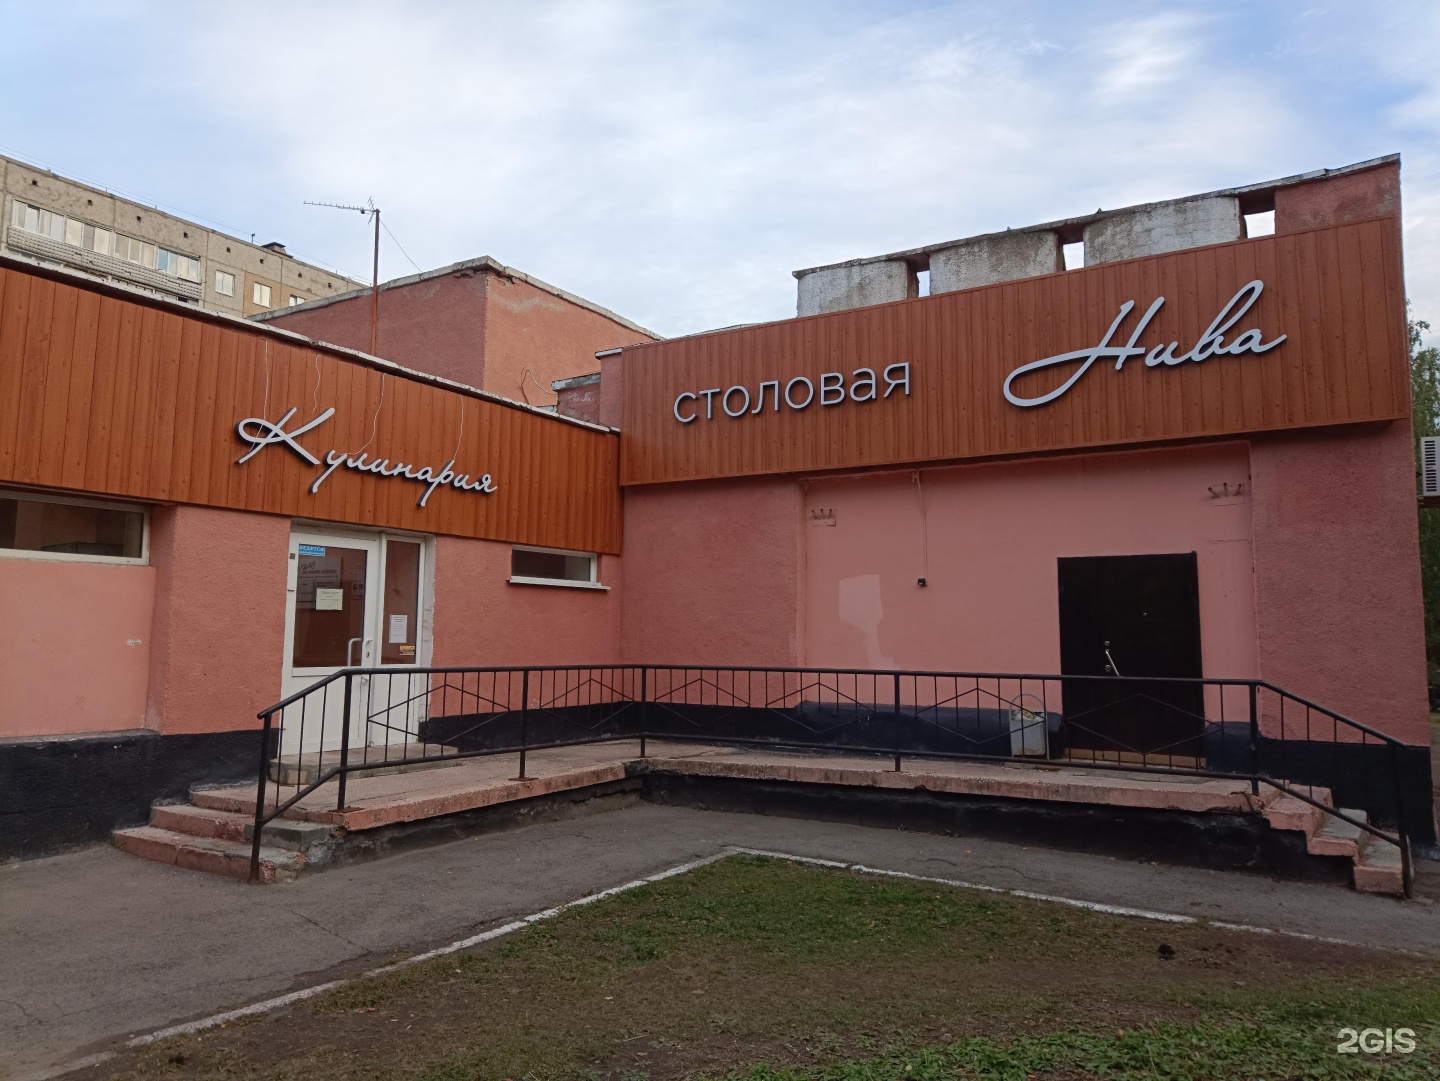 Советская 29 Шоколандия. Кафе в Барнауле с Геншин.